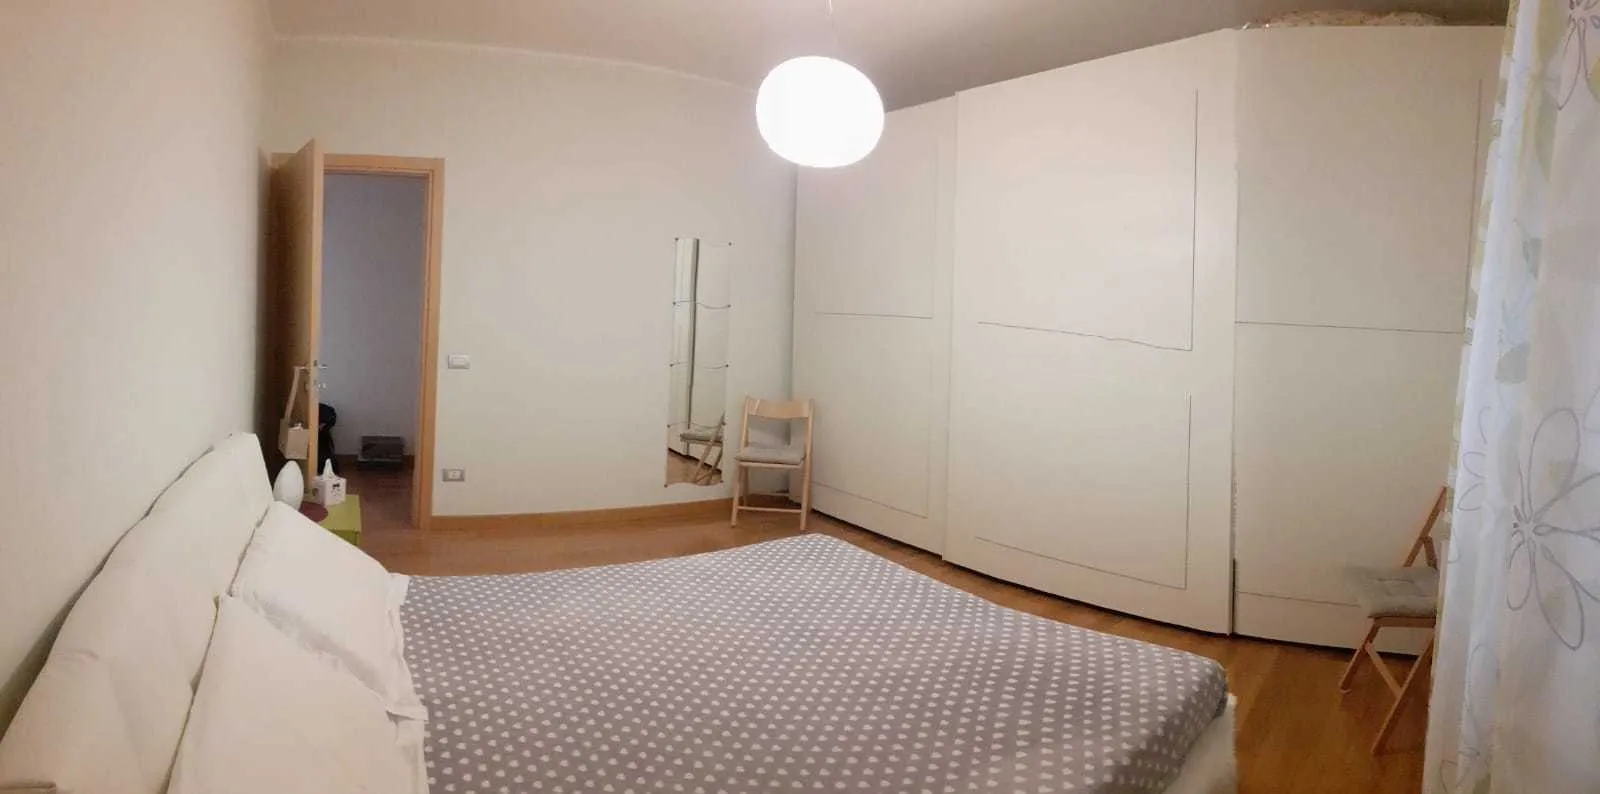 Immagine per Appartamento in vendita a Castiglione in Teverina via Belvedere 6